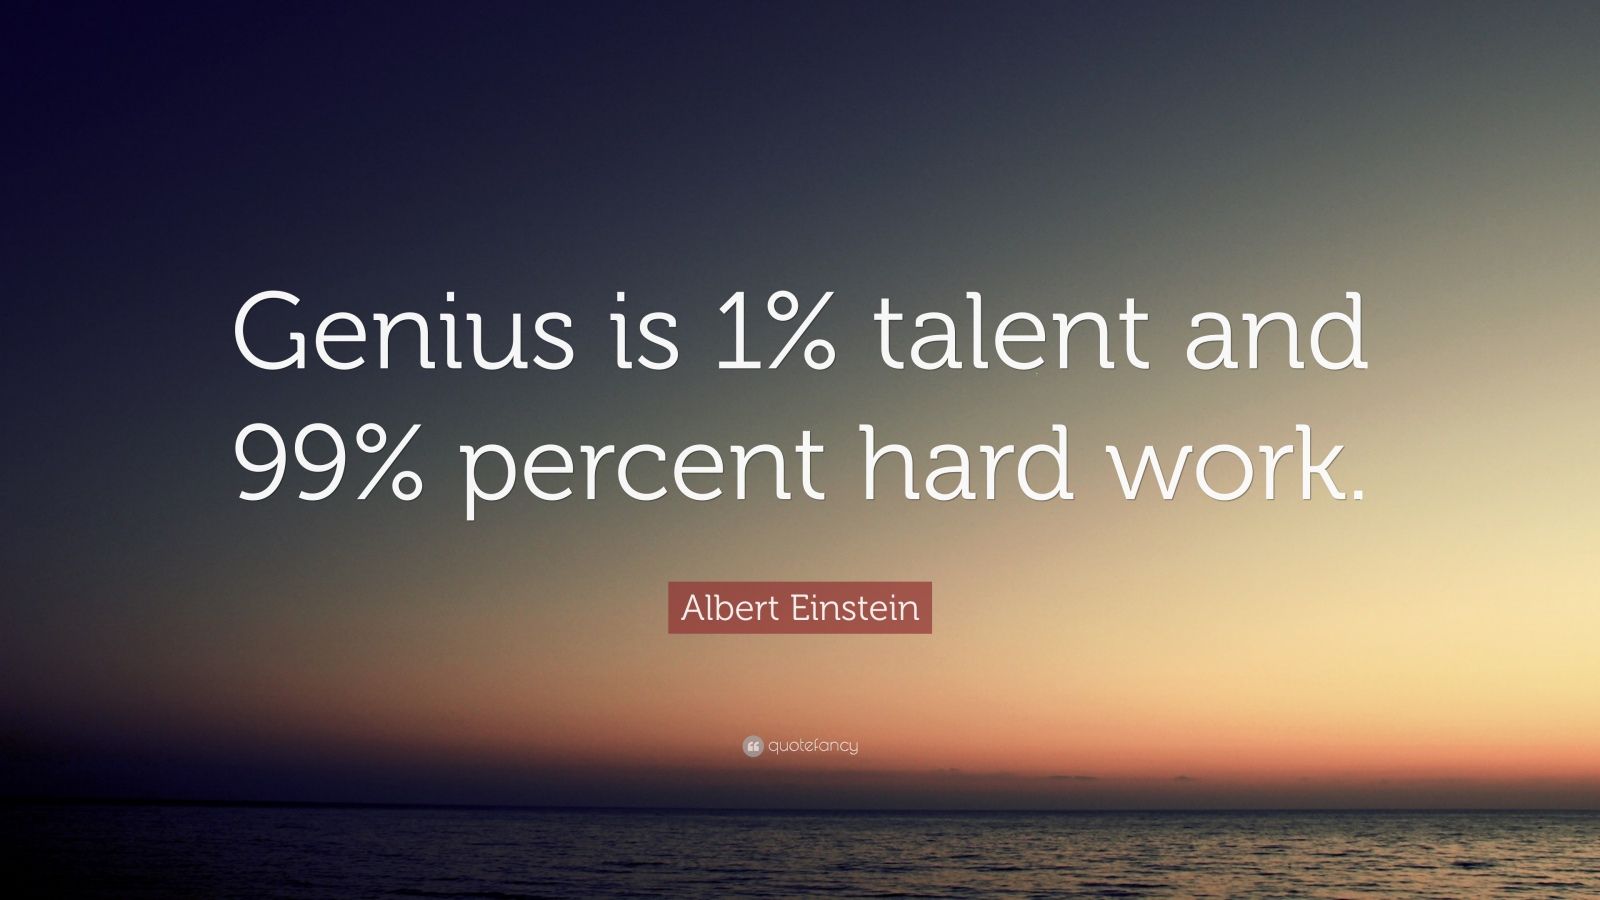 Albert Einstein Quote: “Genius is 1% talent and 99% percent hard work